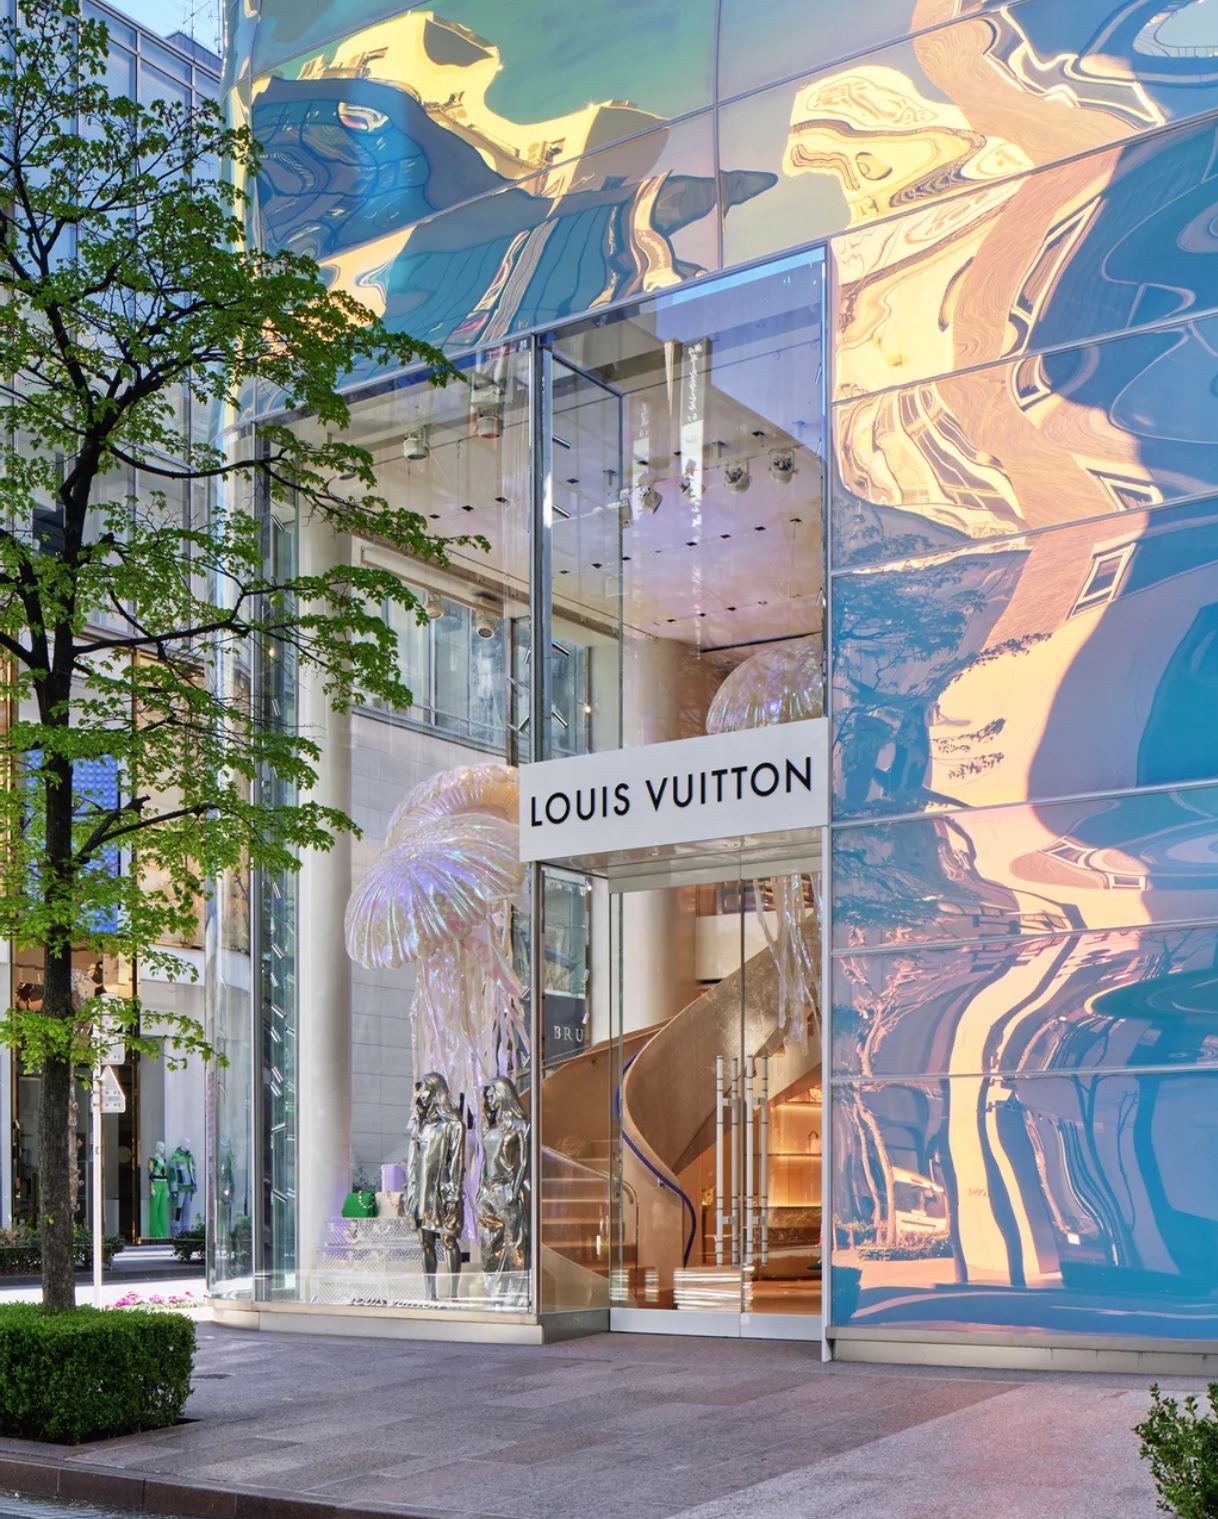 Tòa nhà mới của Louis Vuitton ở trung tâm mua sắm đình đám Ginza nổi bật và vô cùng thời thượng.